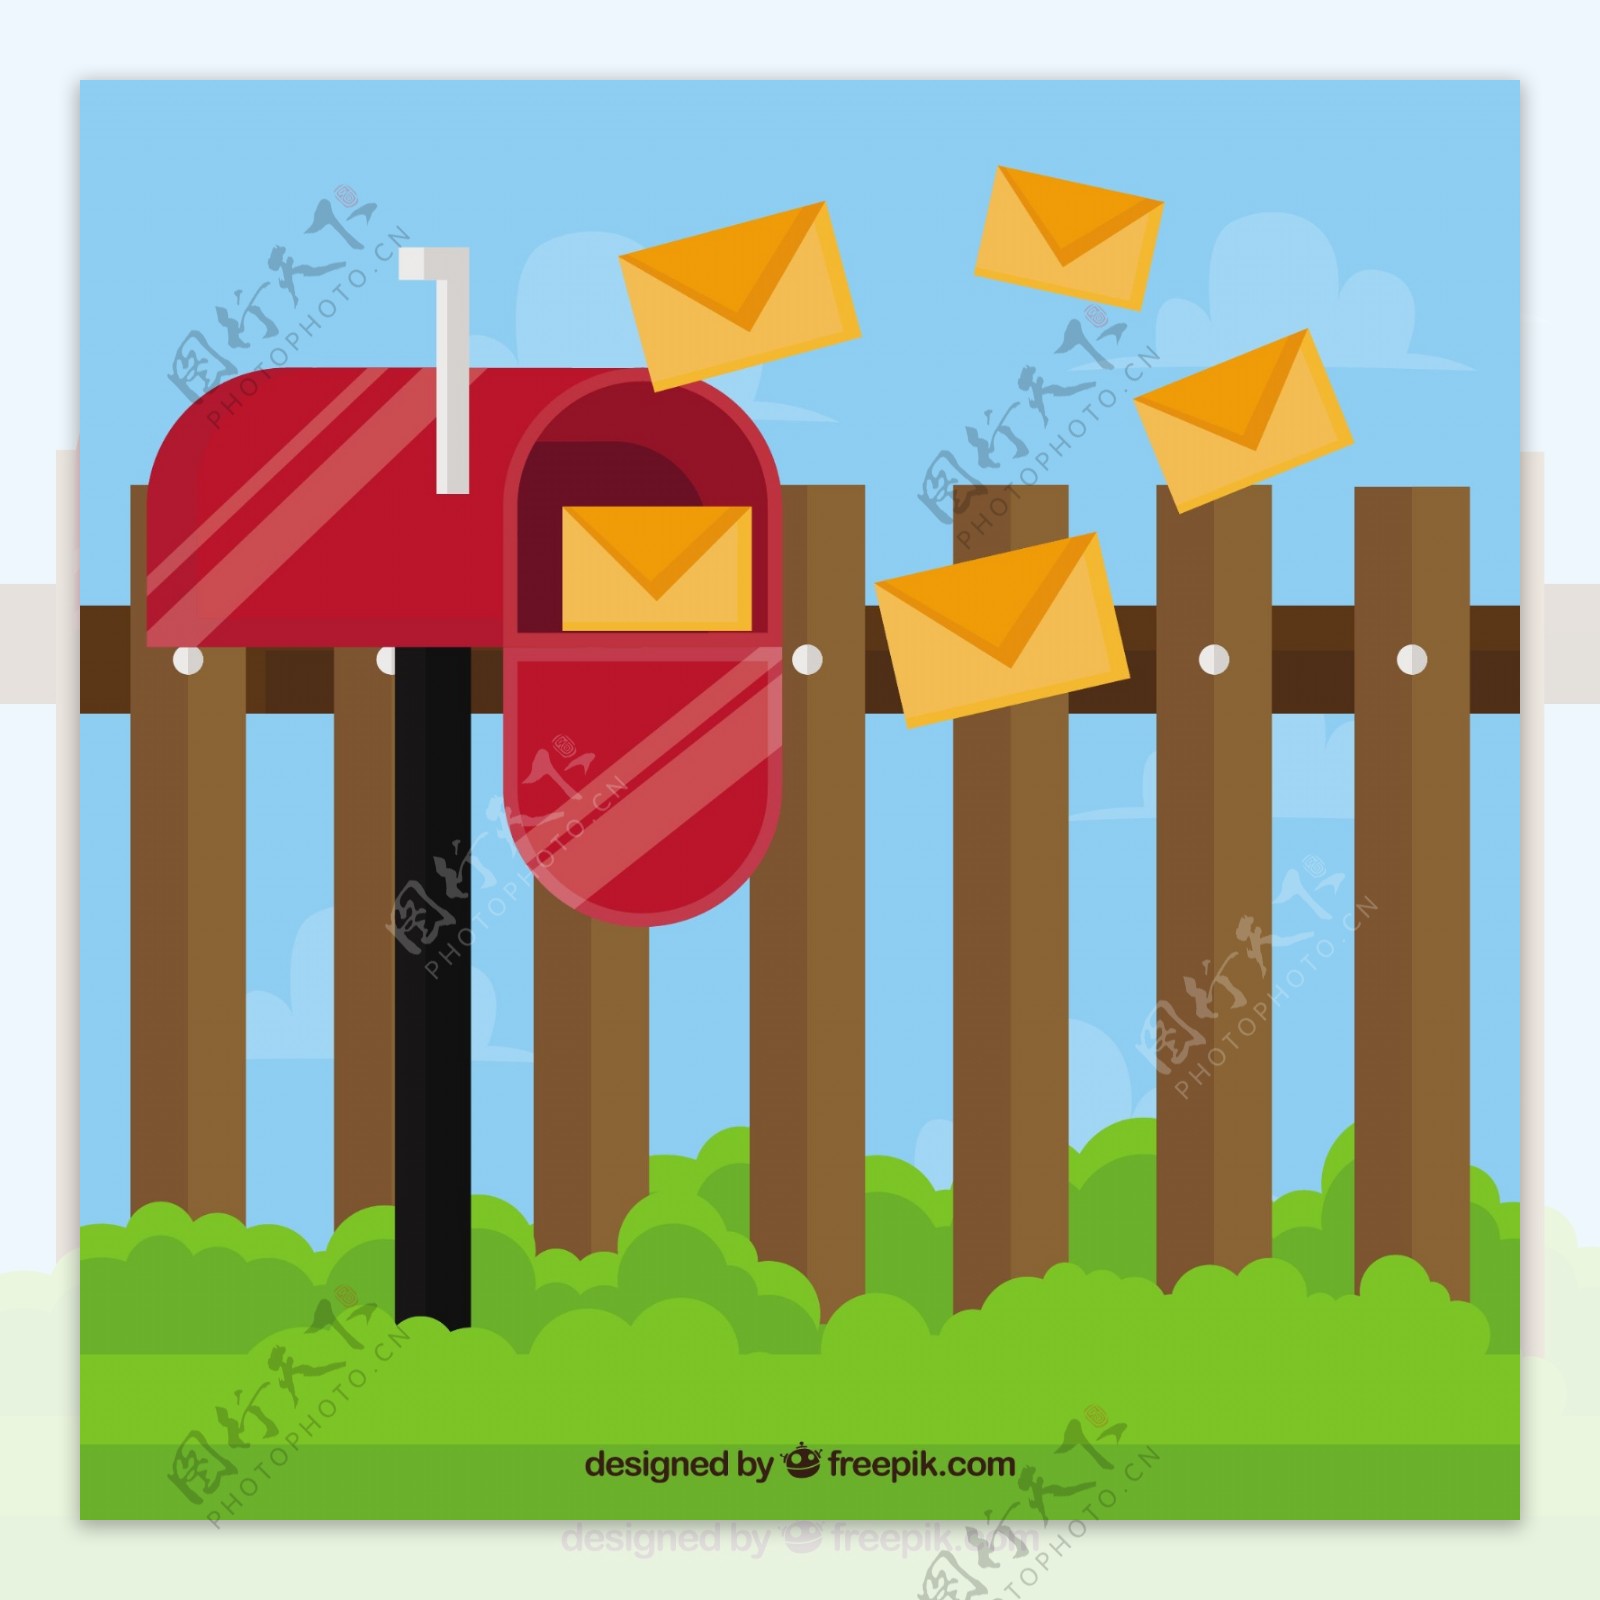 红色邮箱背景和信件